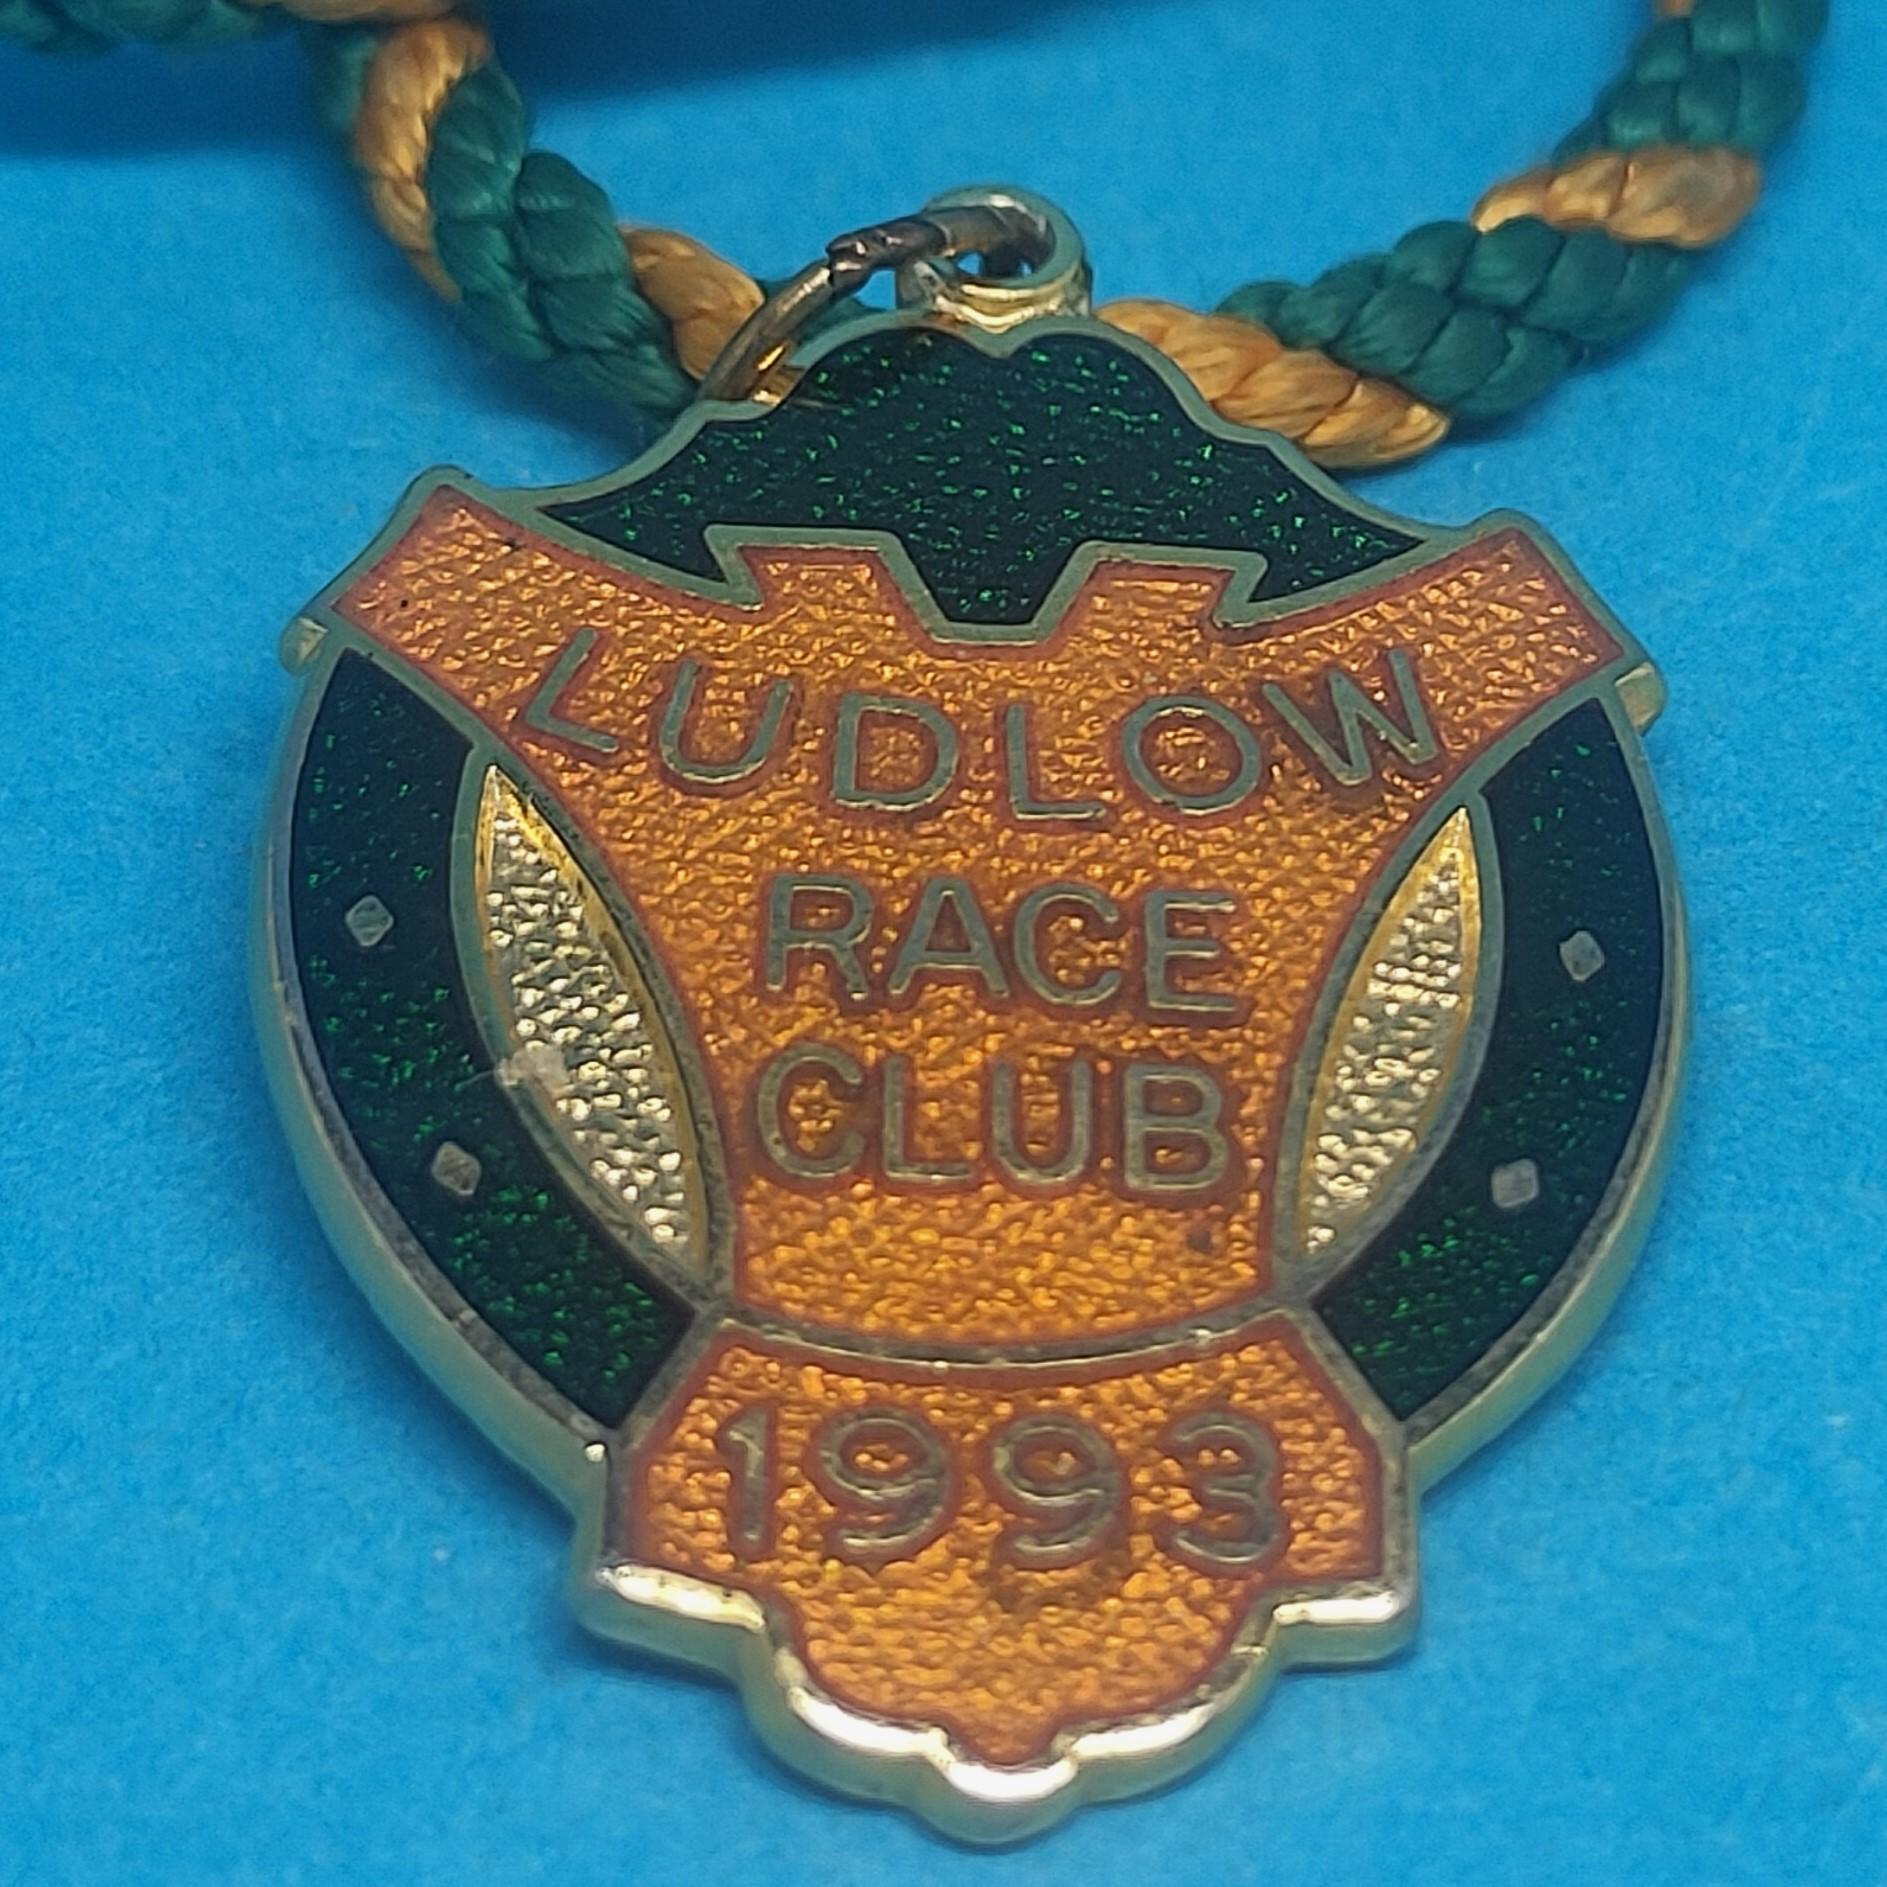 Ludlow 1993